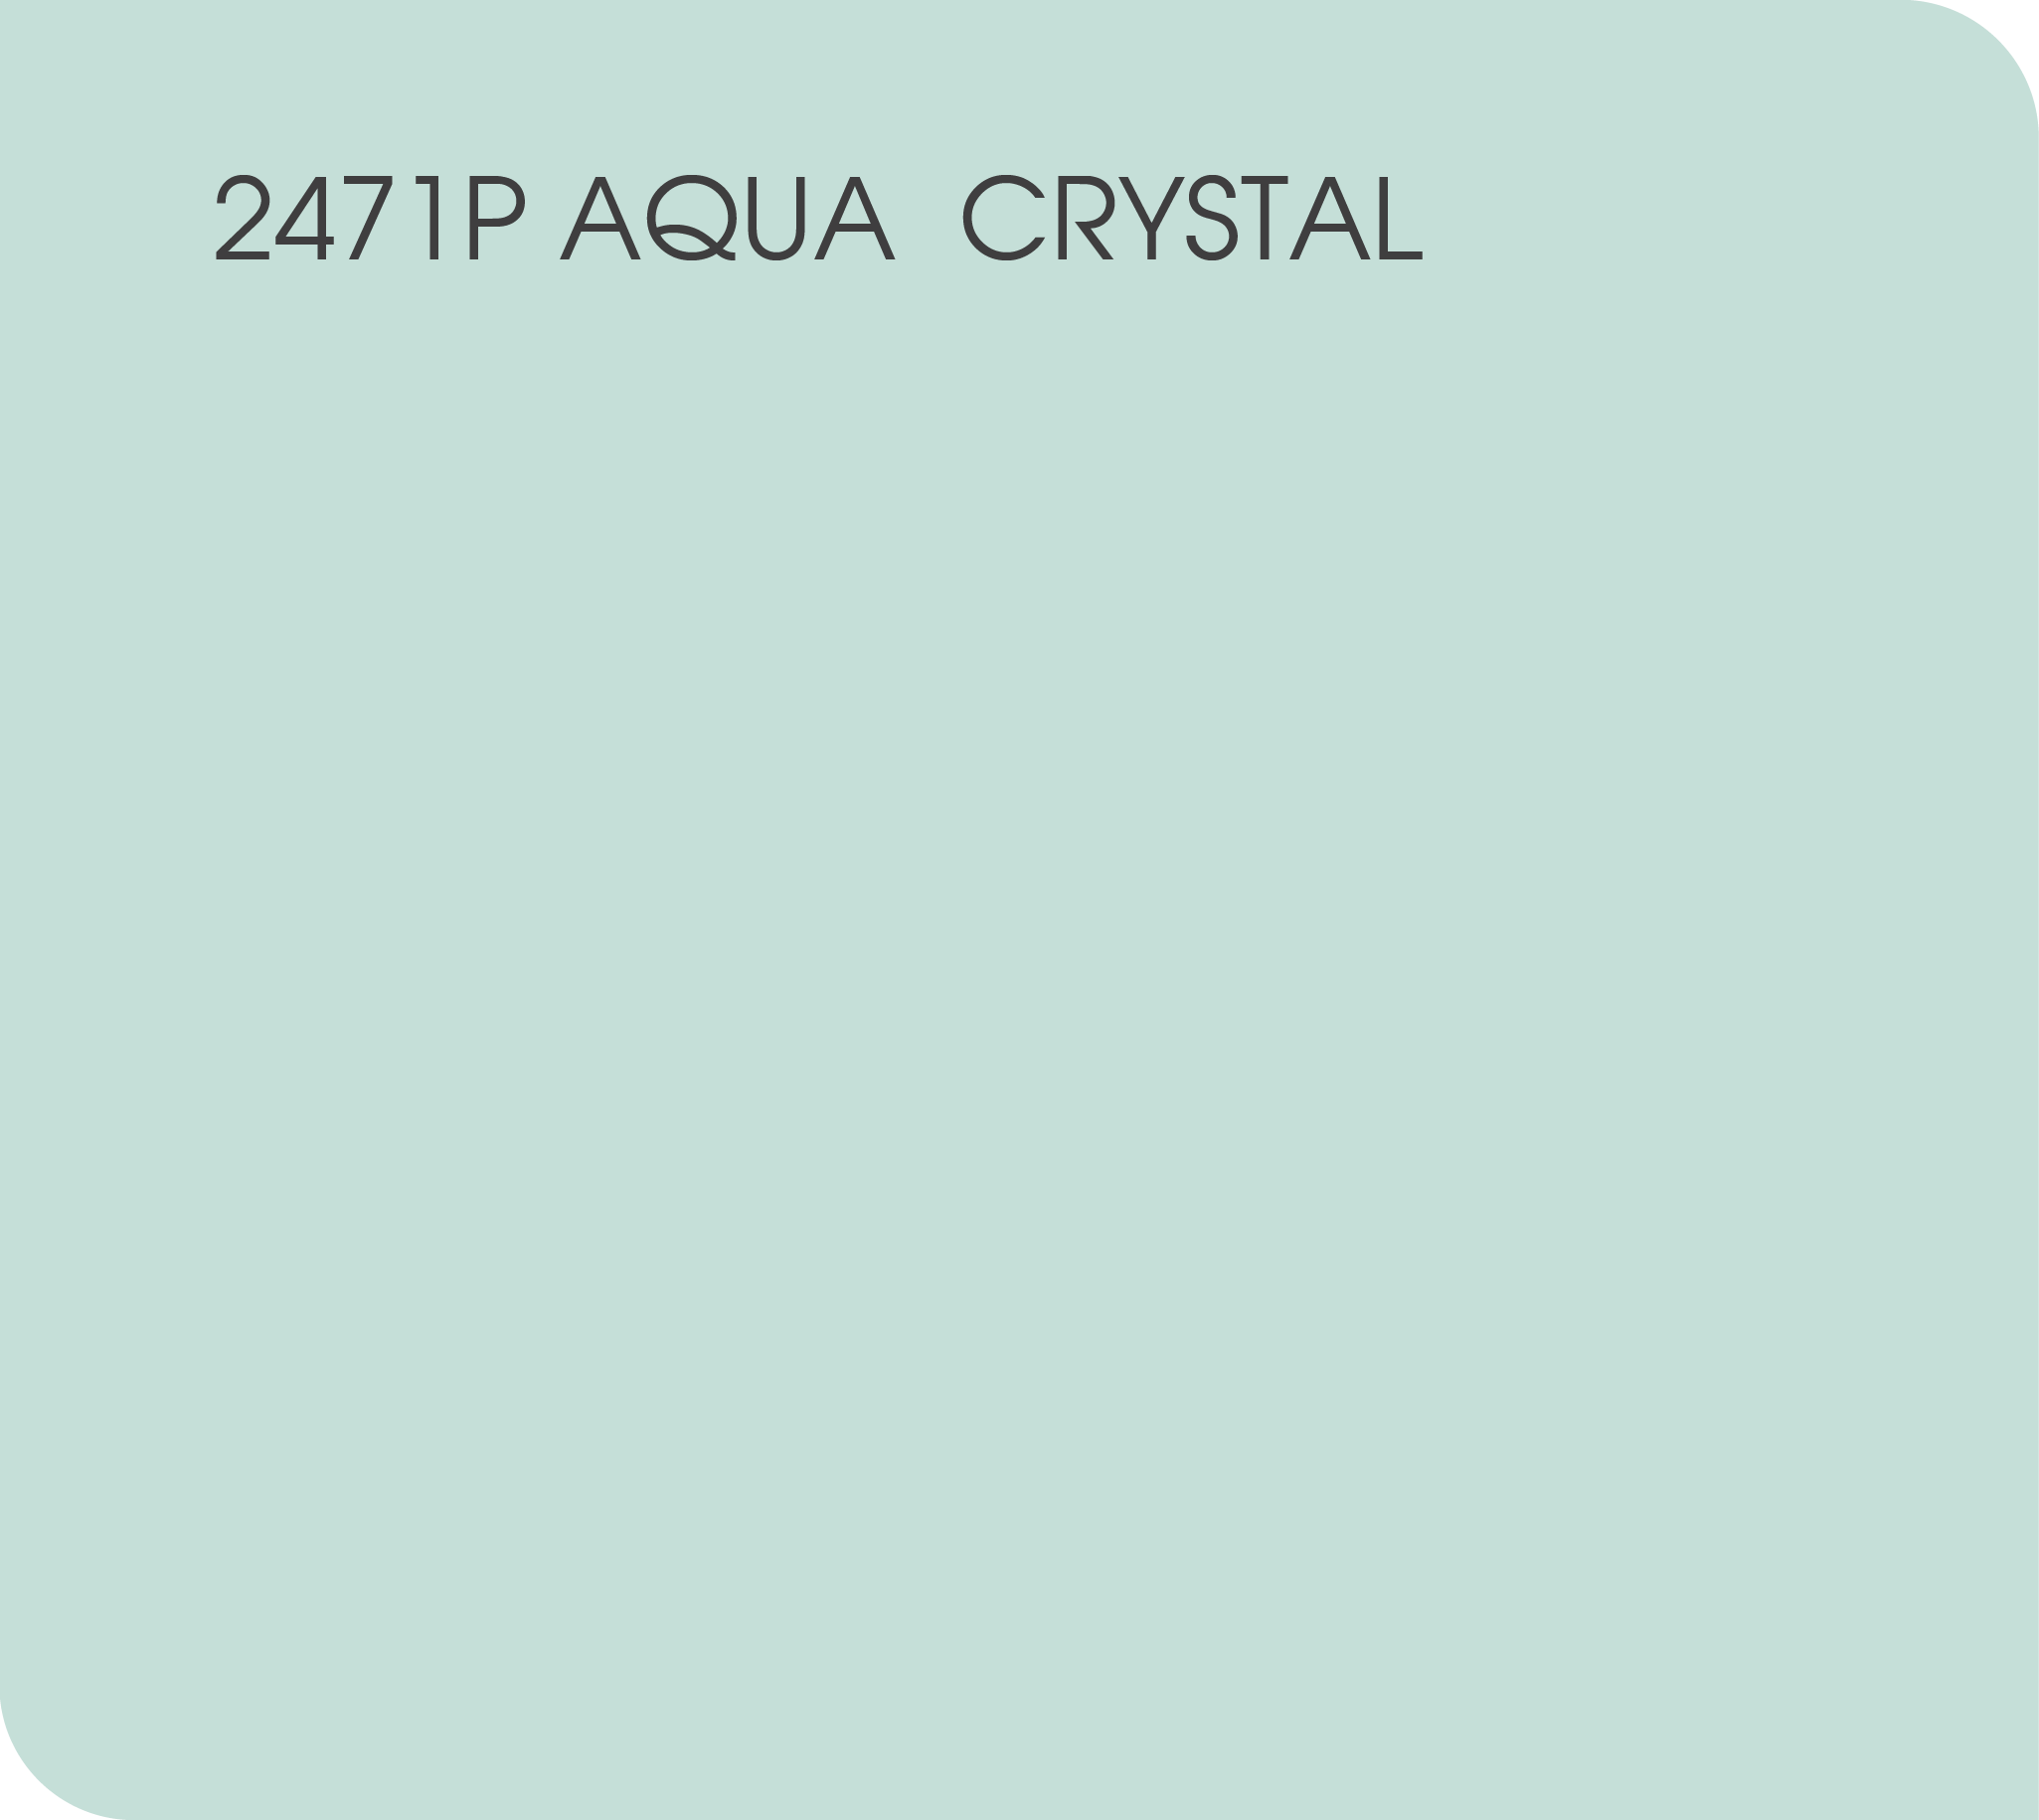 2471P aqua crystal